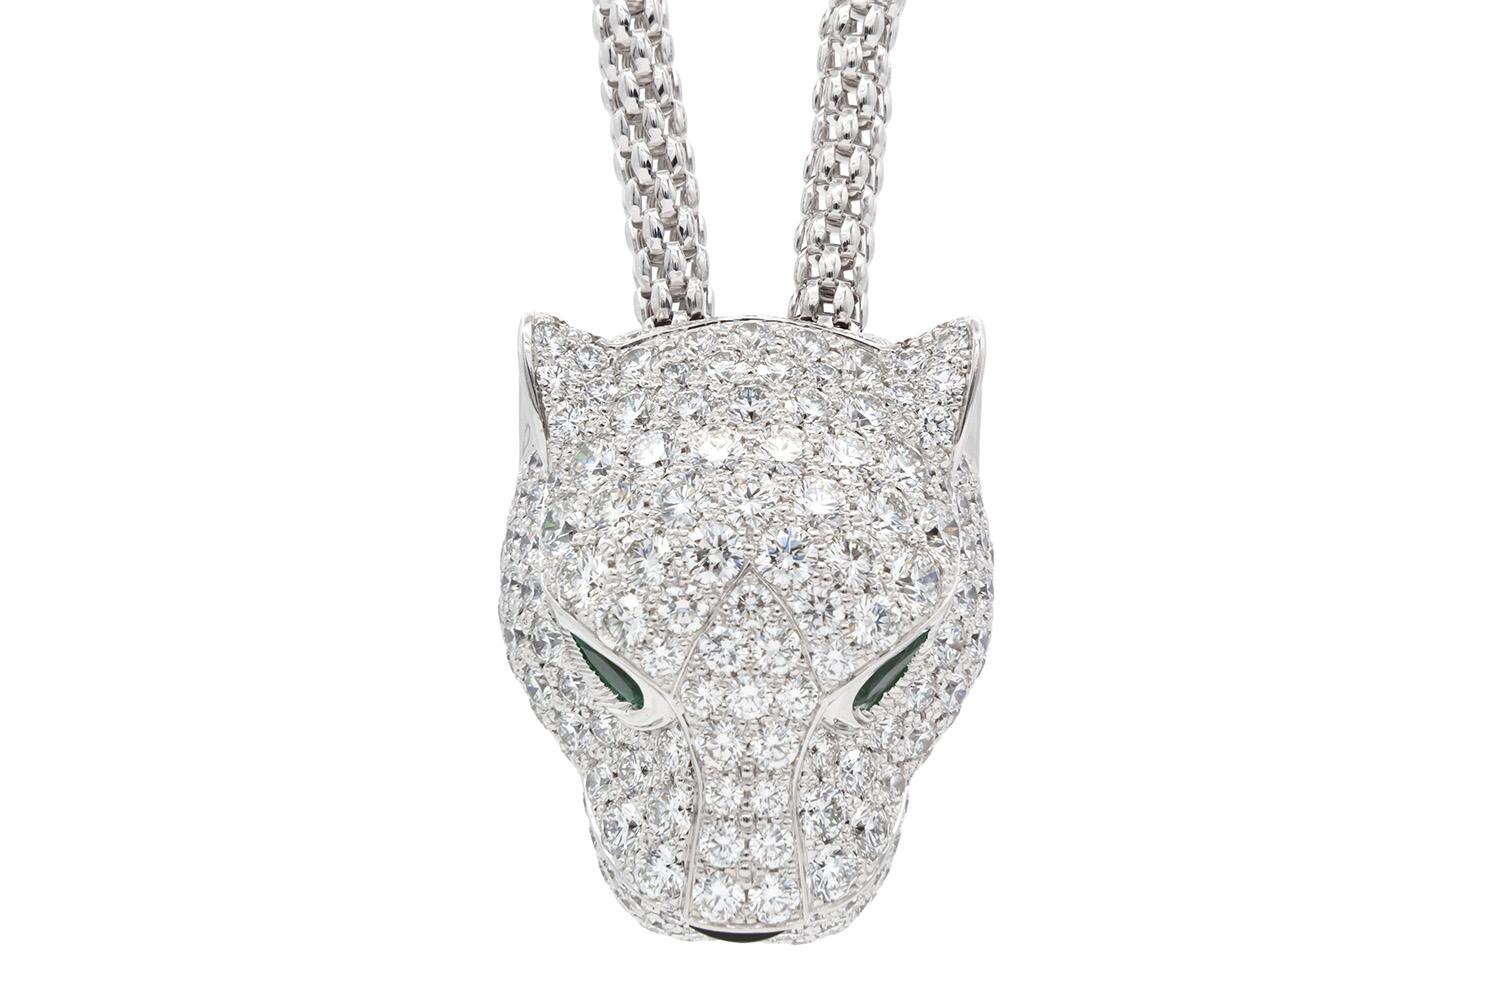 Nous avons le plaisir de vous proposer cet authentique collier Panthère de Cartier. Ce superbe collier en or blanc 18 carats est orné d'yeux en émeraude, d'un nez en onyx et de 195 diamants ronds de taille brillant d'une valeur totale d'environ